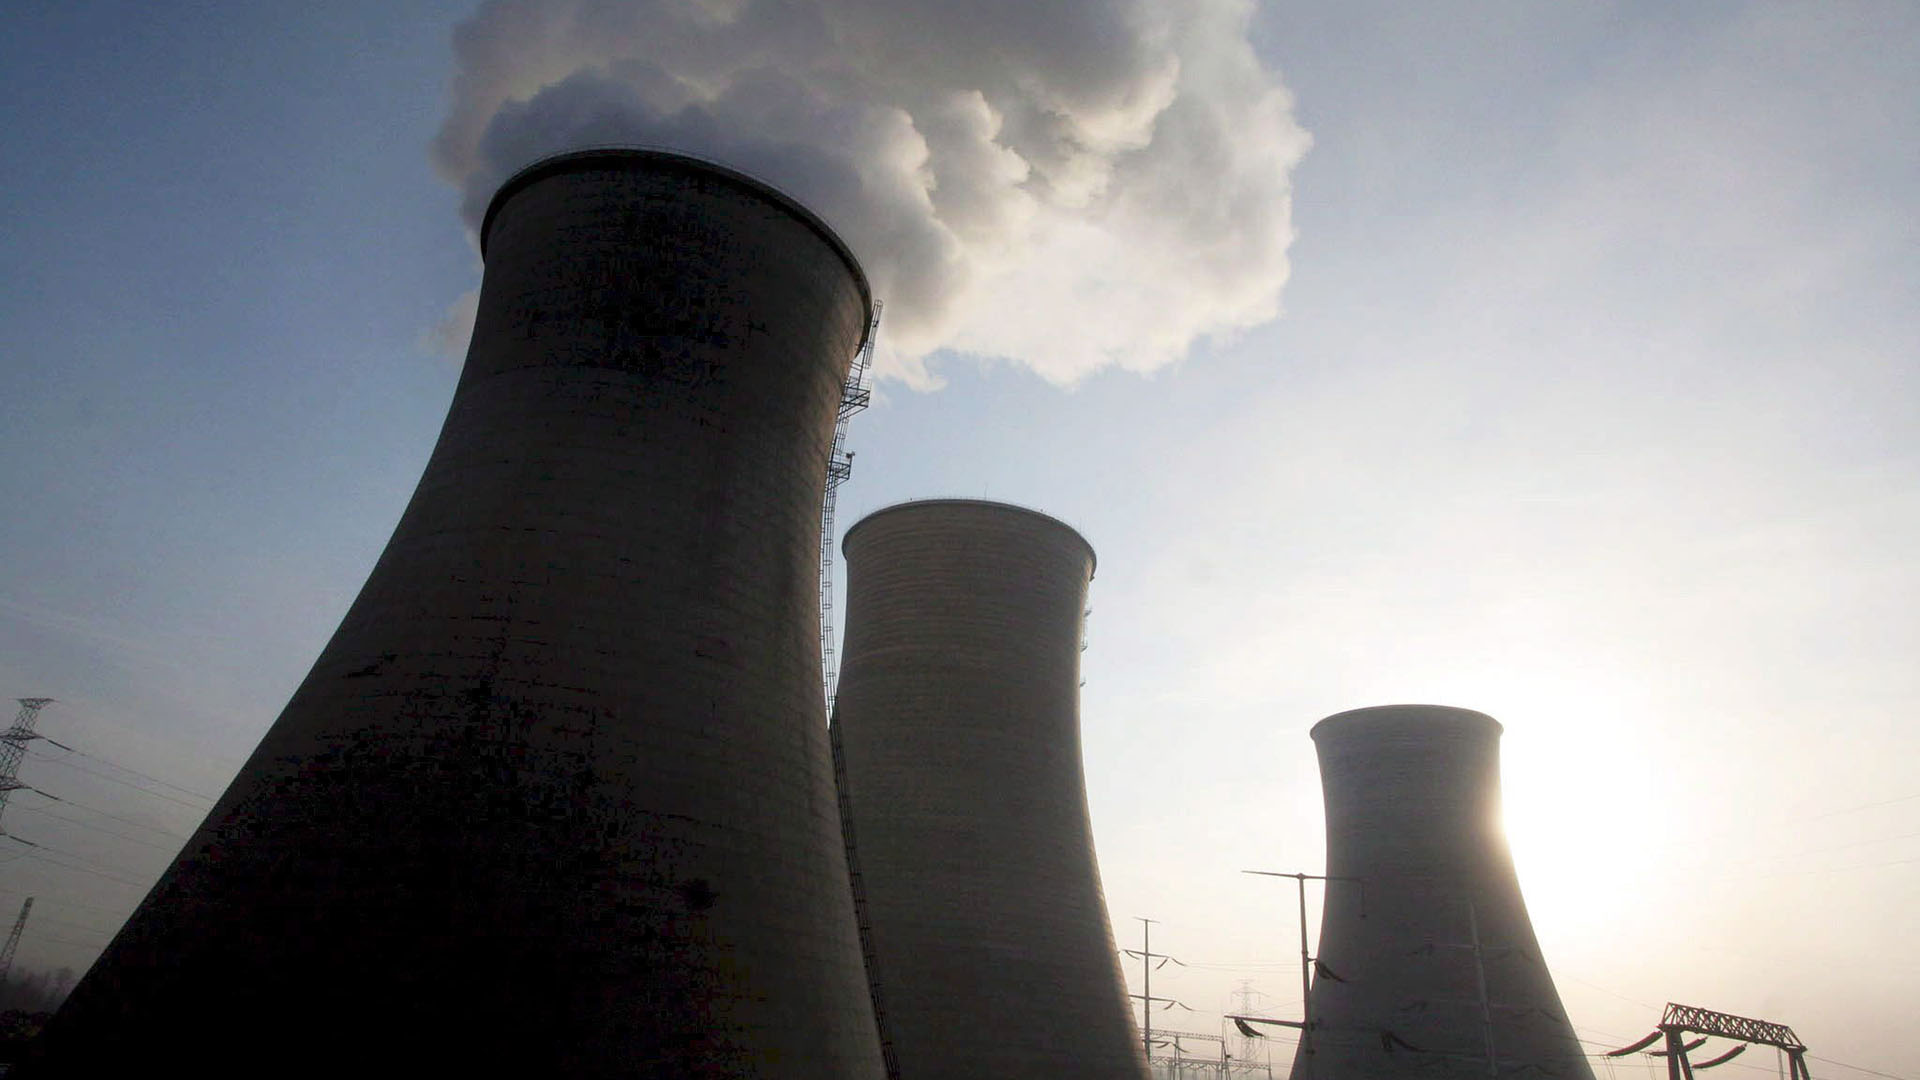 Dampf steigt aus den Kühltürmen des Kohlekraftwerkes von Xining in China auf. (Archiv: 18.01.2006) | picture alliance / dpa